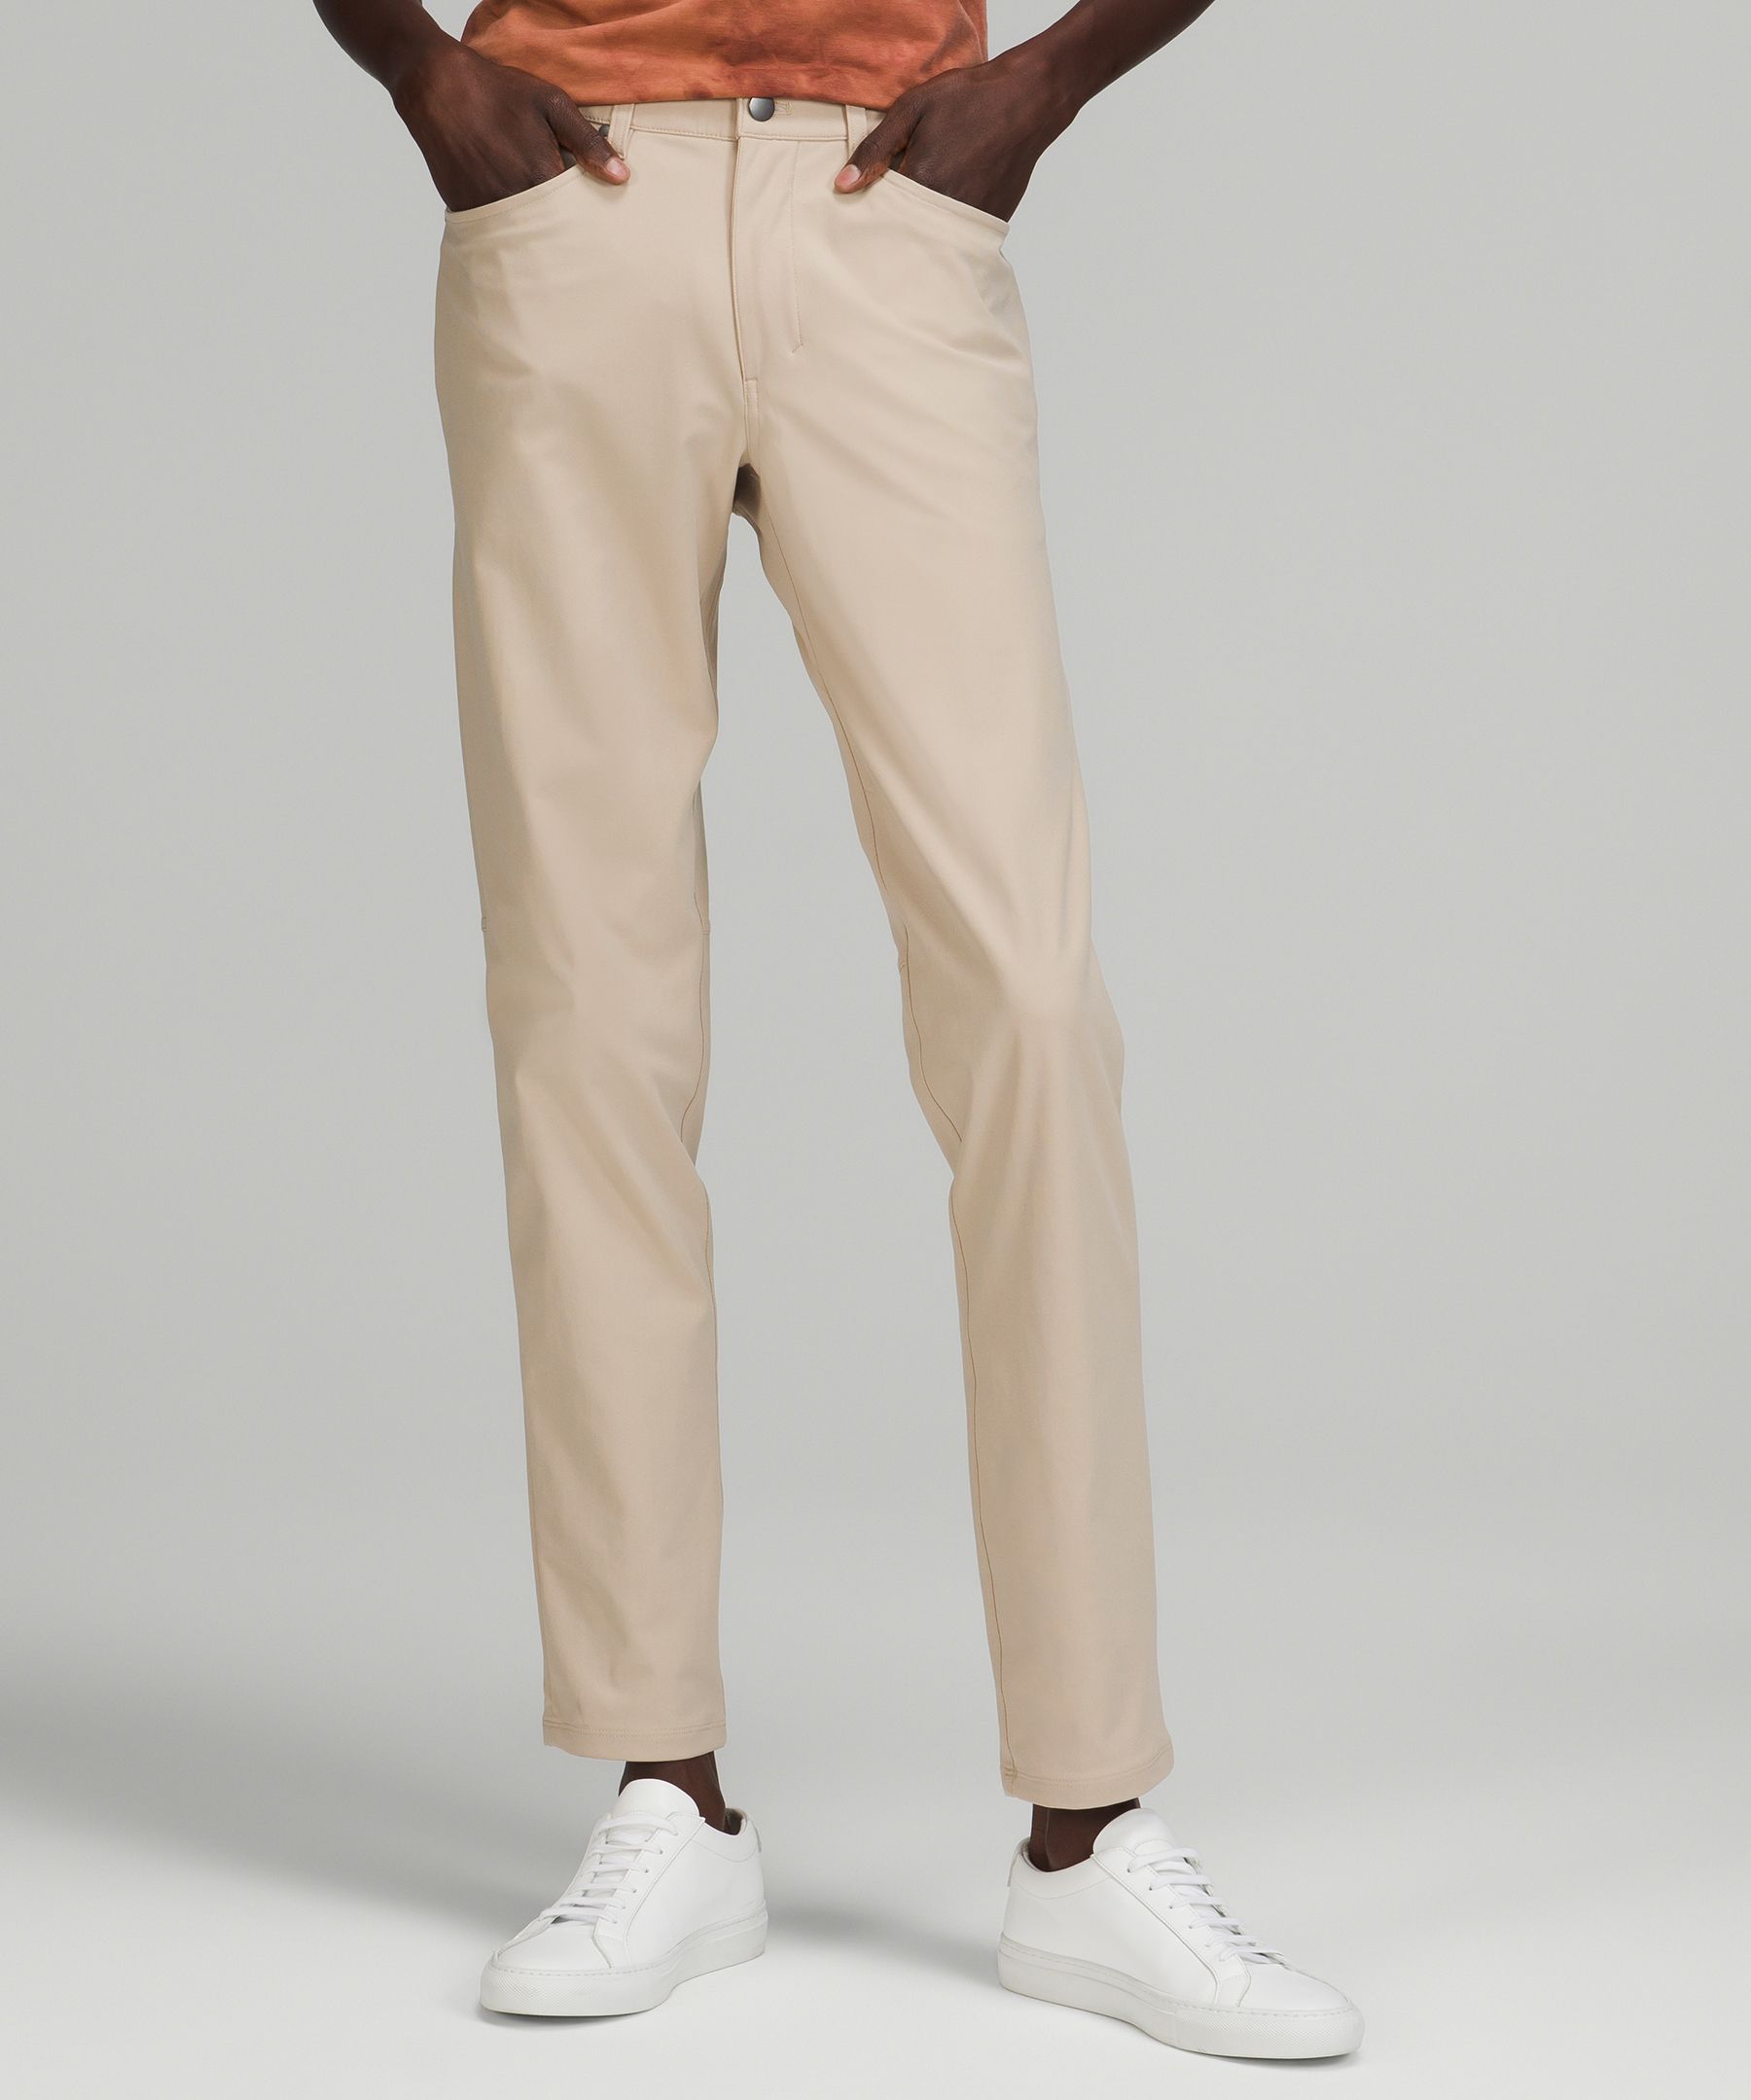 ABC Slim-Fit 5 Pocket Pant 32L *Warpstreme, Men's Trousers